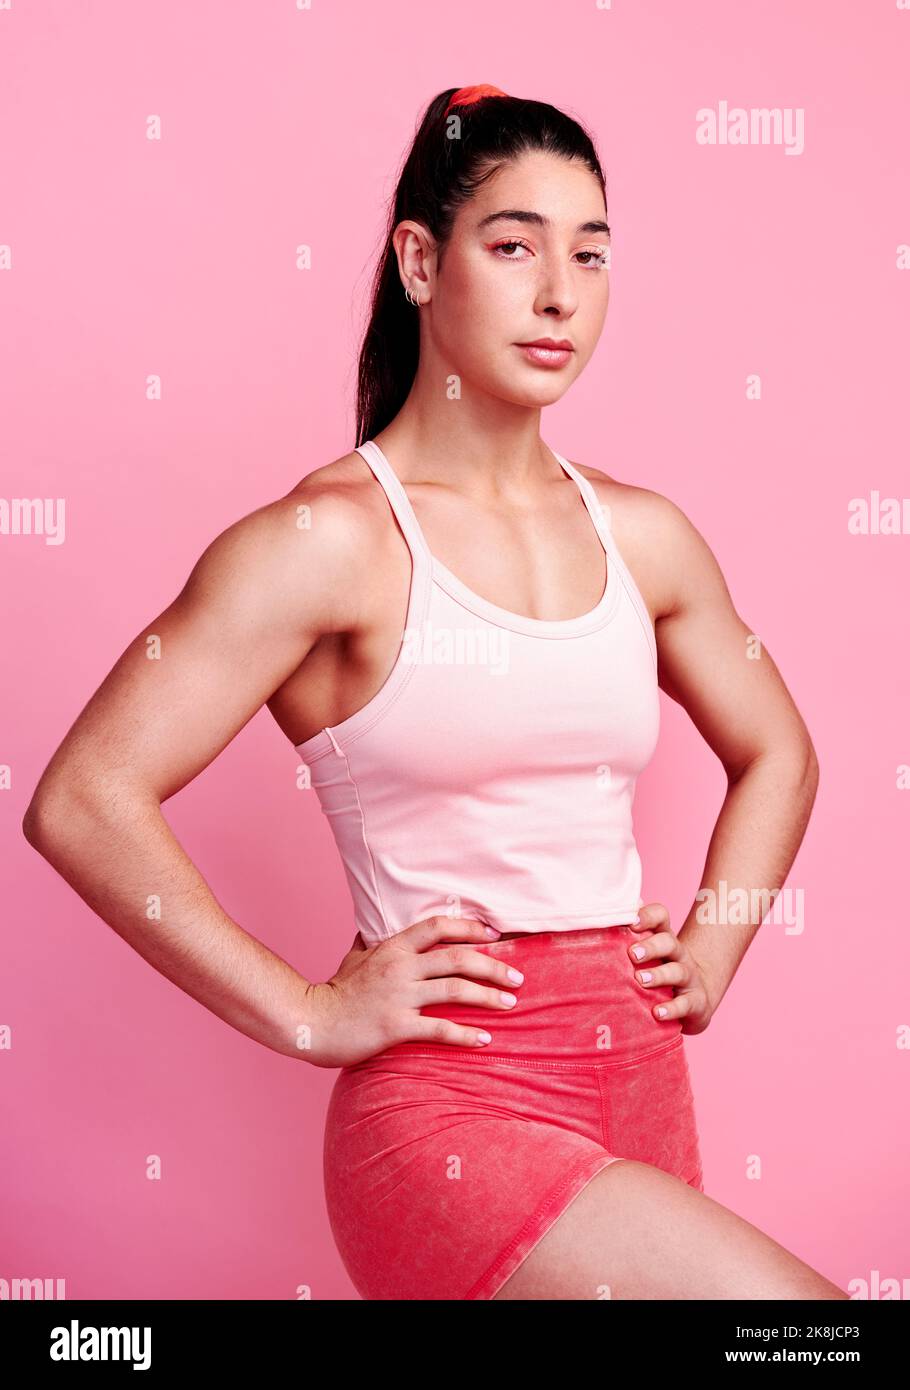 Rimanere dedicati e disciplinati. Studio ritratto di una giovane donna sportiva che posa con le mani sui fianchi su uno sfondo rosa. Foto Stock